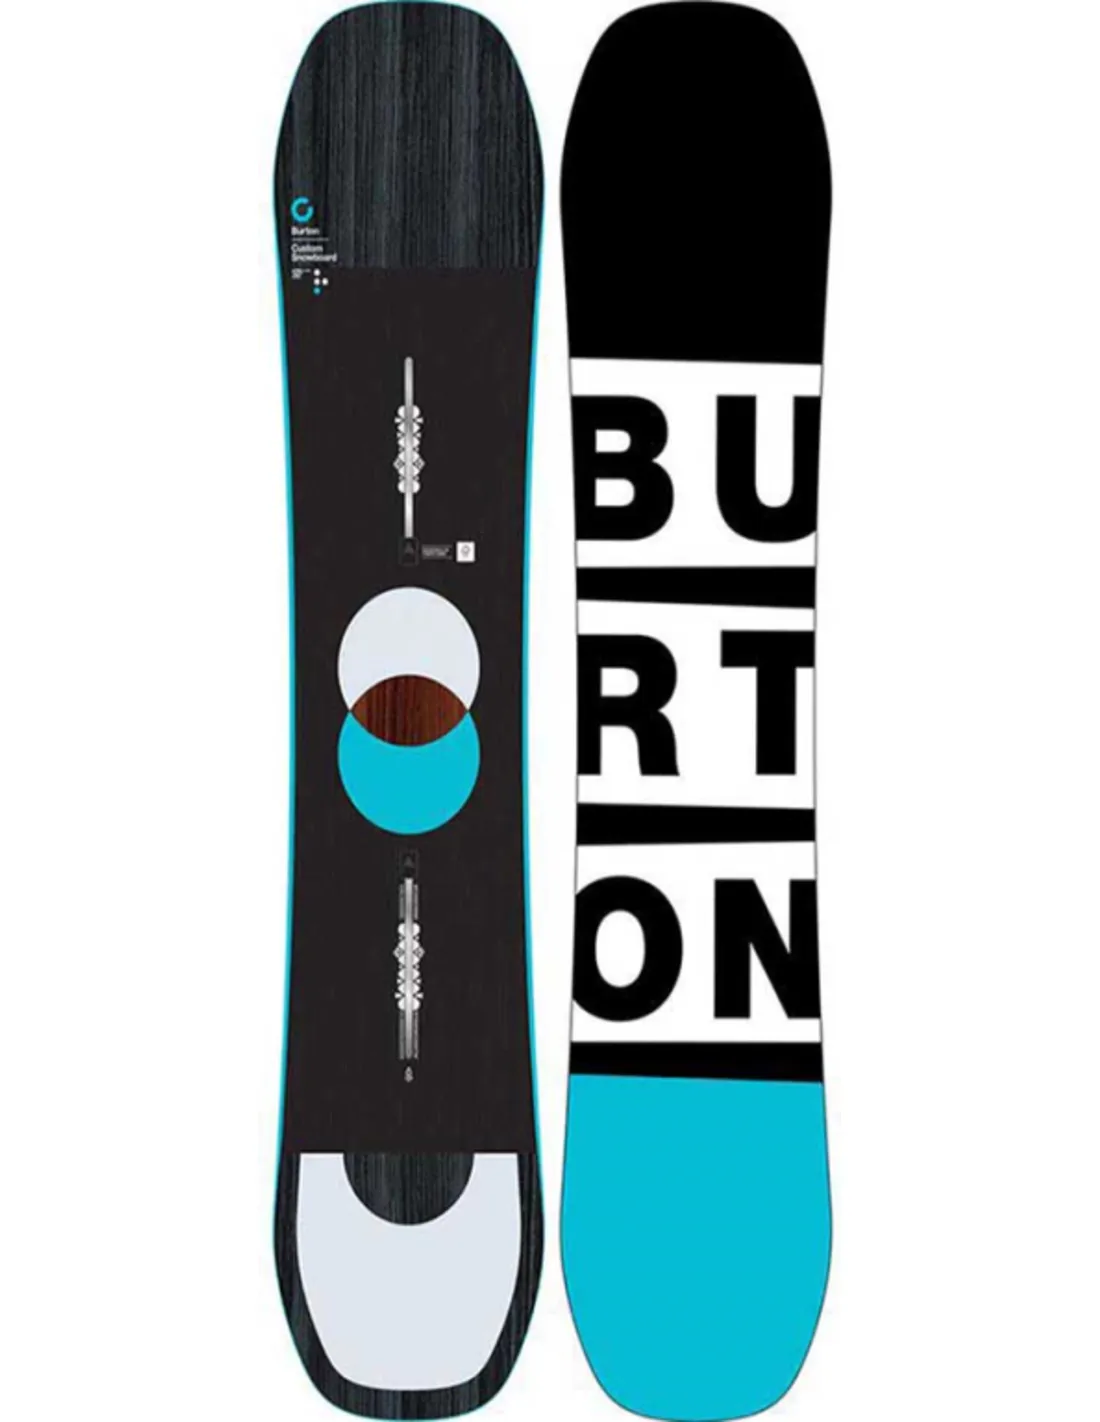 スノーボード Burton custom 158cm - freshslice.com